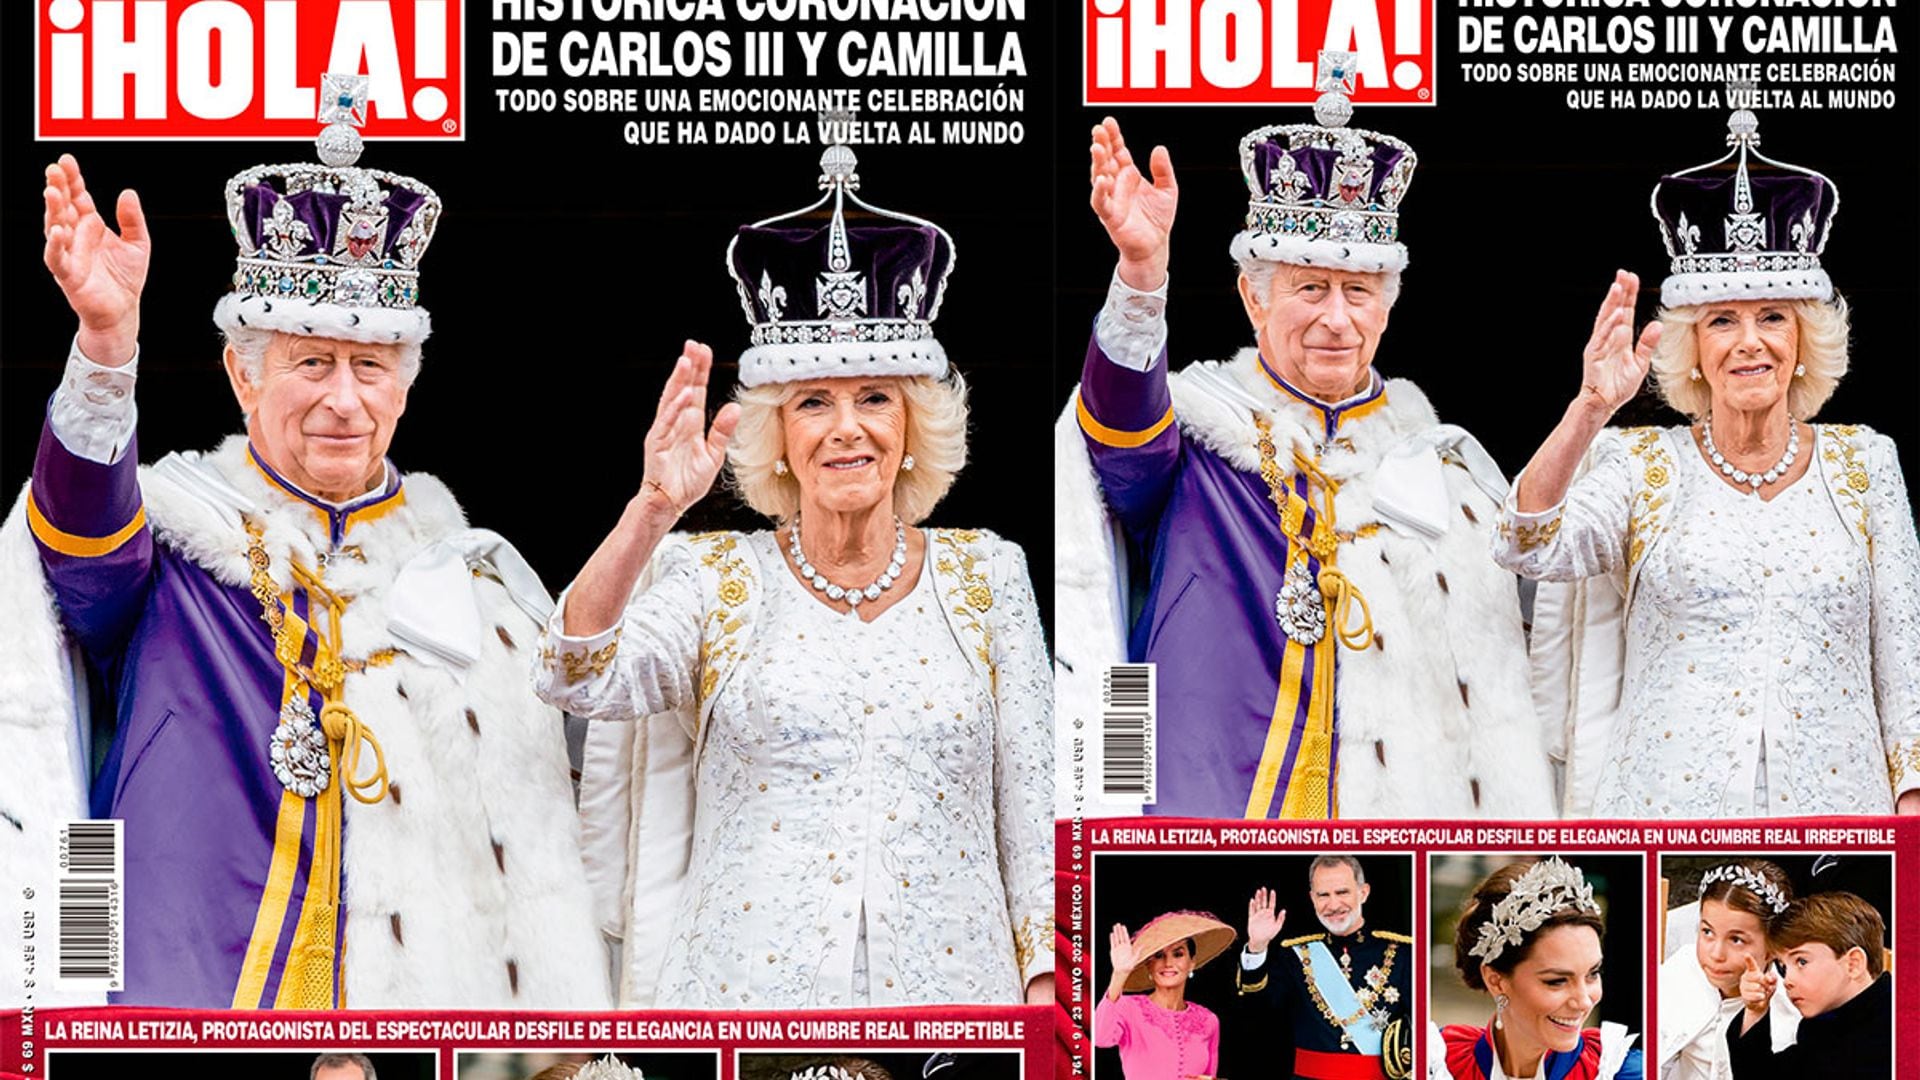 En ¡HOLA!, la histórica coronación de Carlos III y Camilla